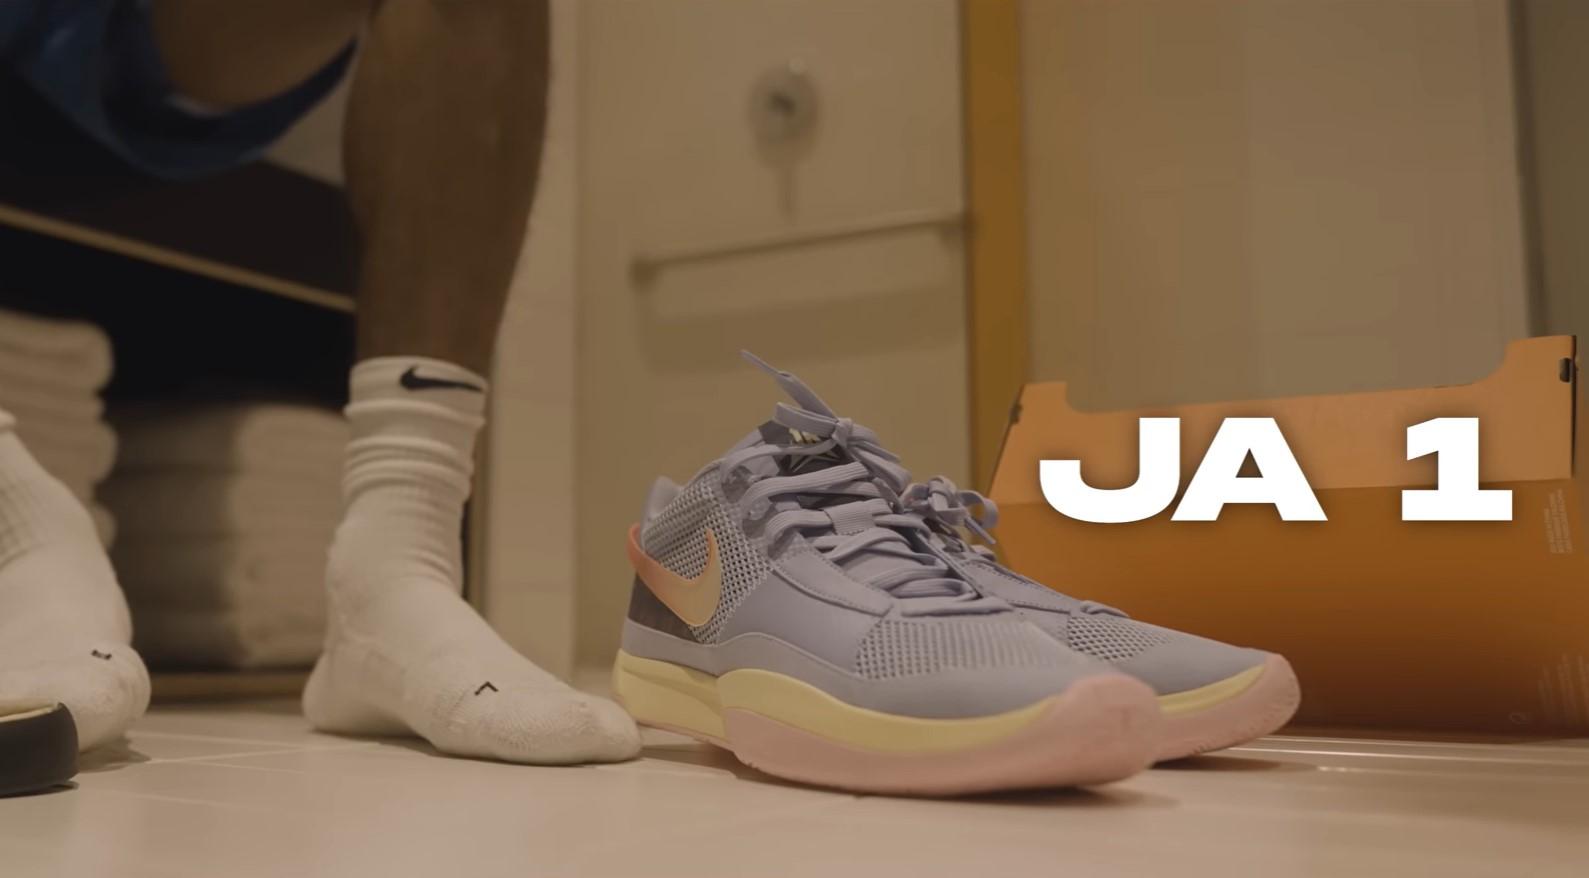 Les sneakers de Ja Morant ne sont disponibles sur site de Nike...